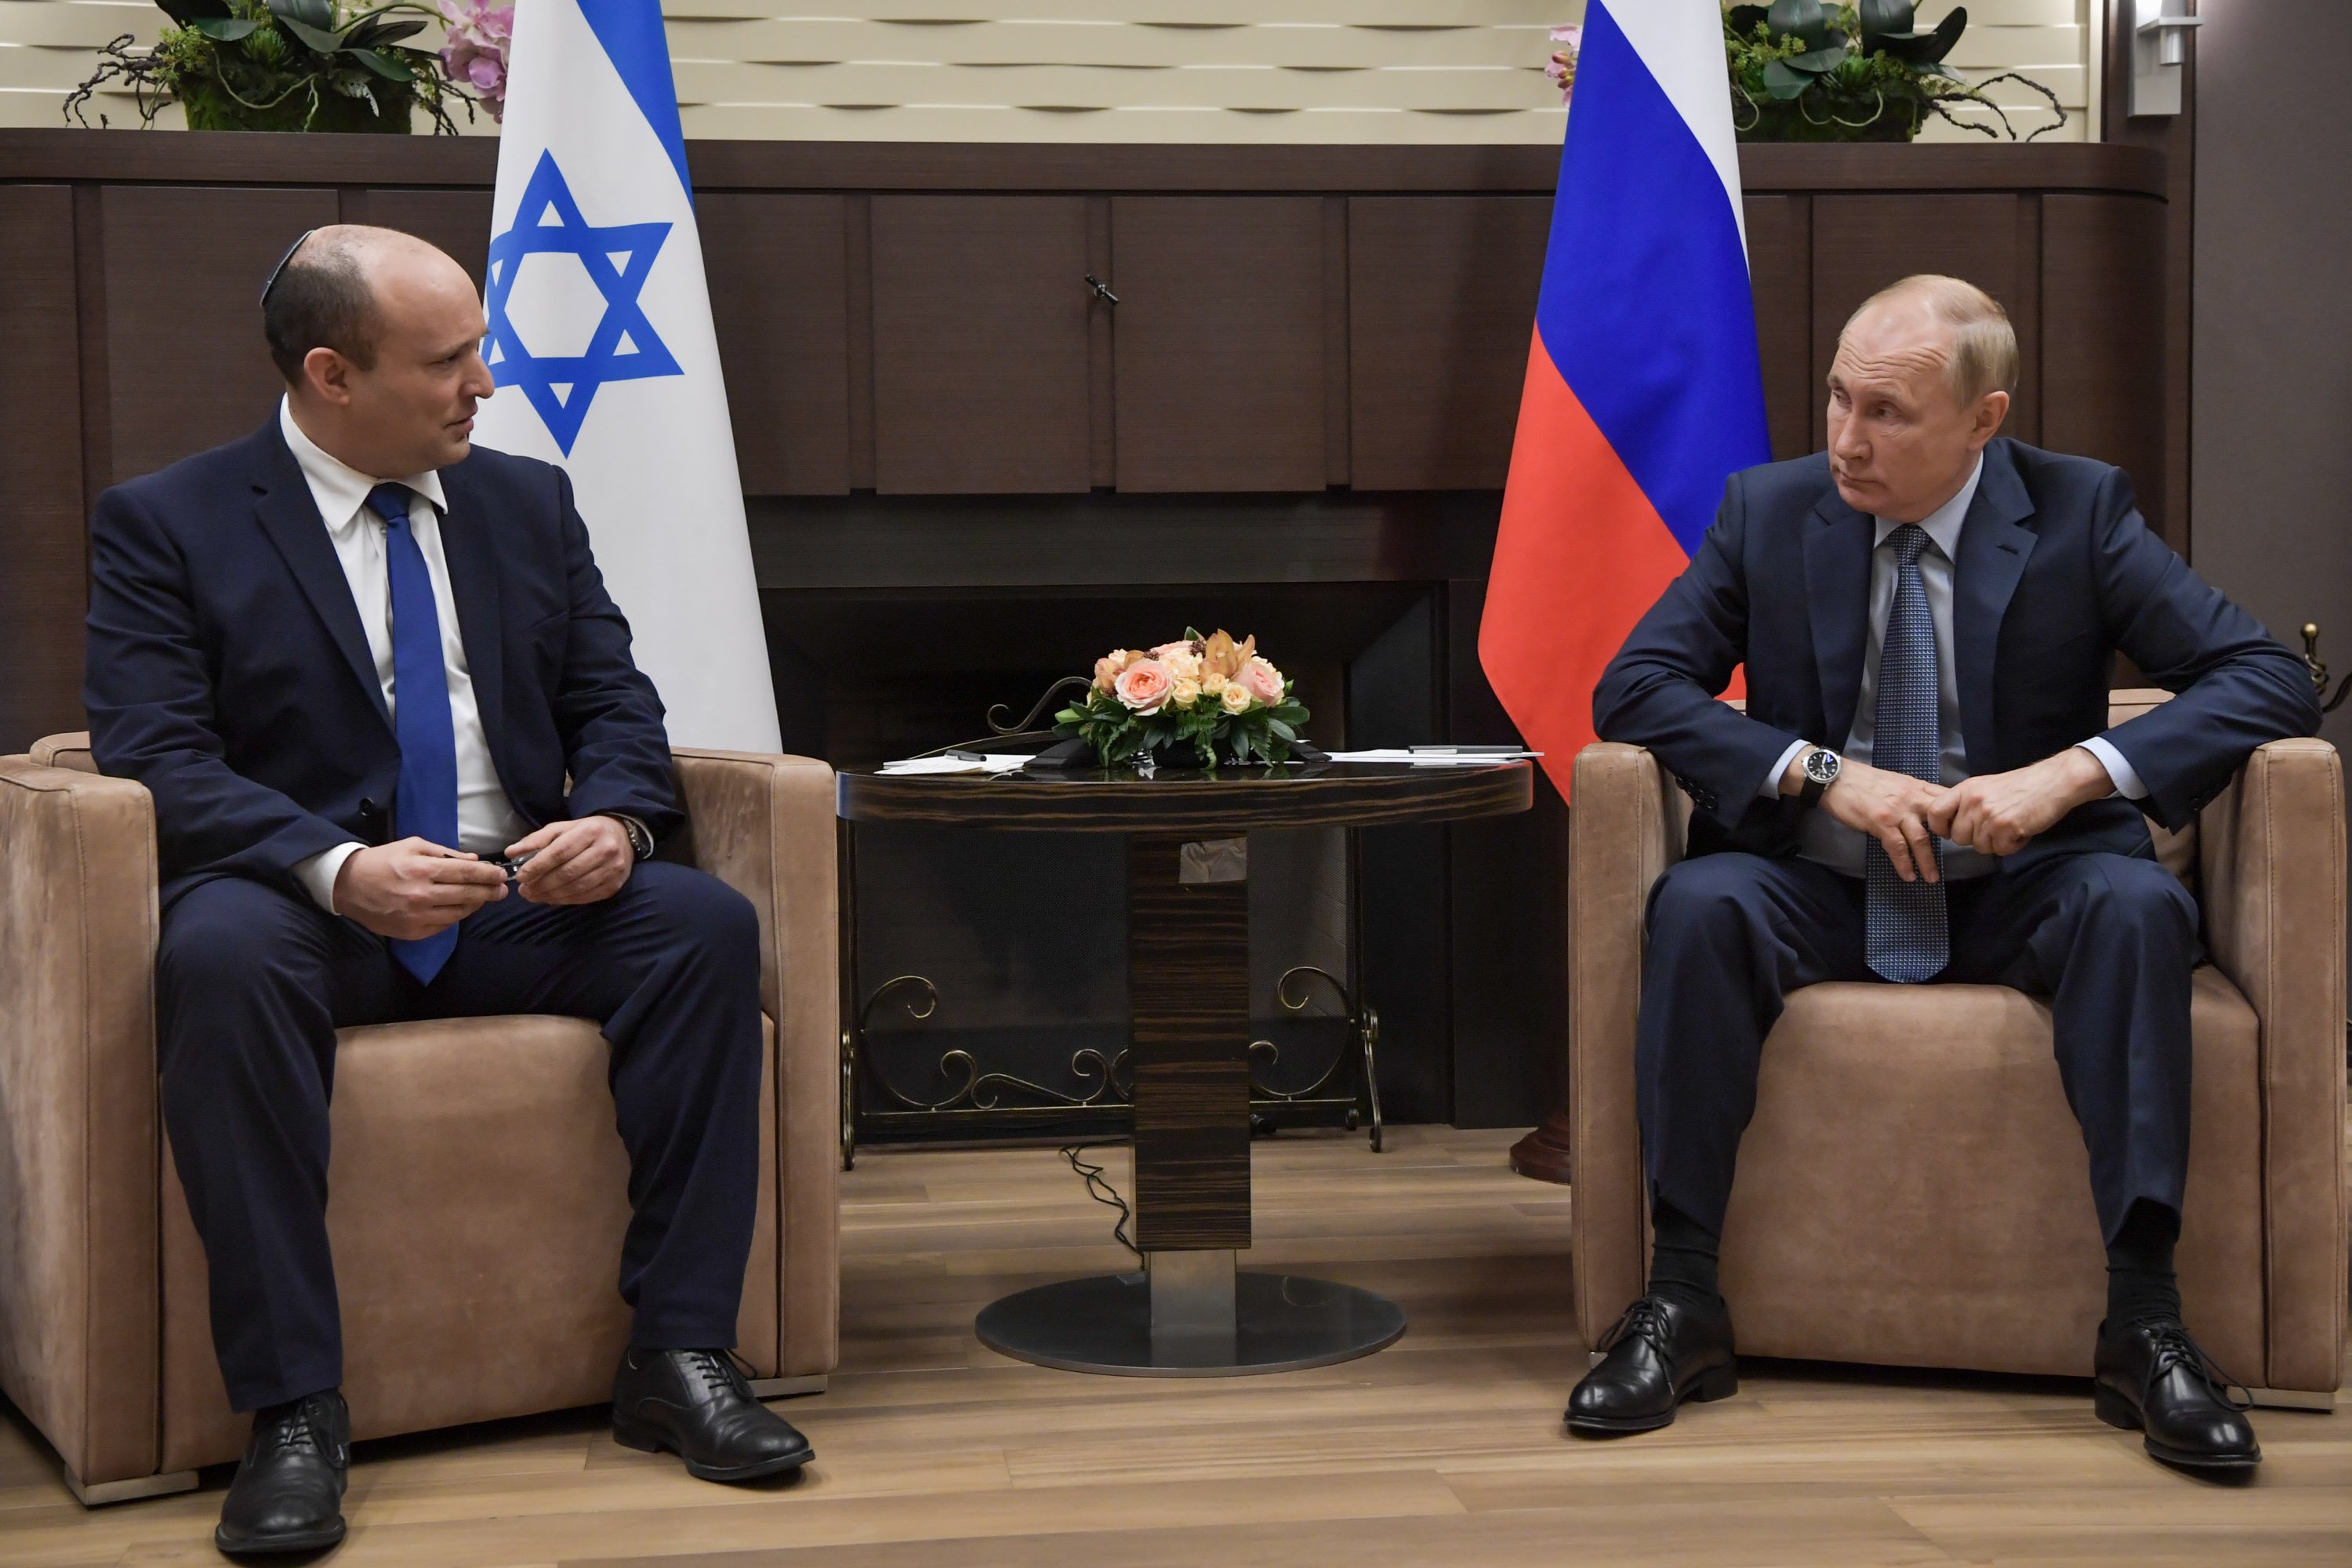 بوتين لبينيت: لدى روسيا وإسرائيل خلافات عديدة بشأن سوريا لكن هناك نقاط تماس أيضا-0